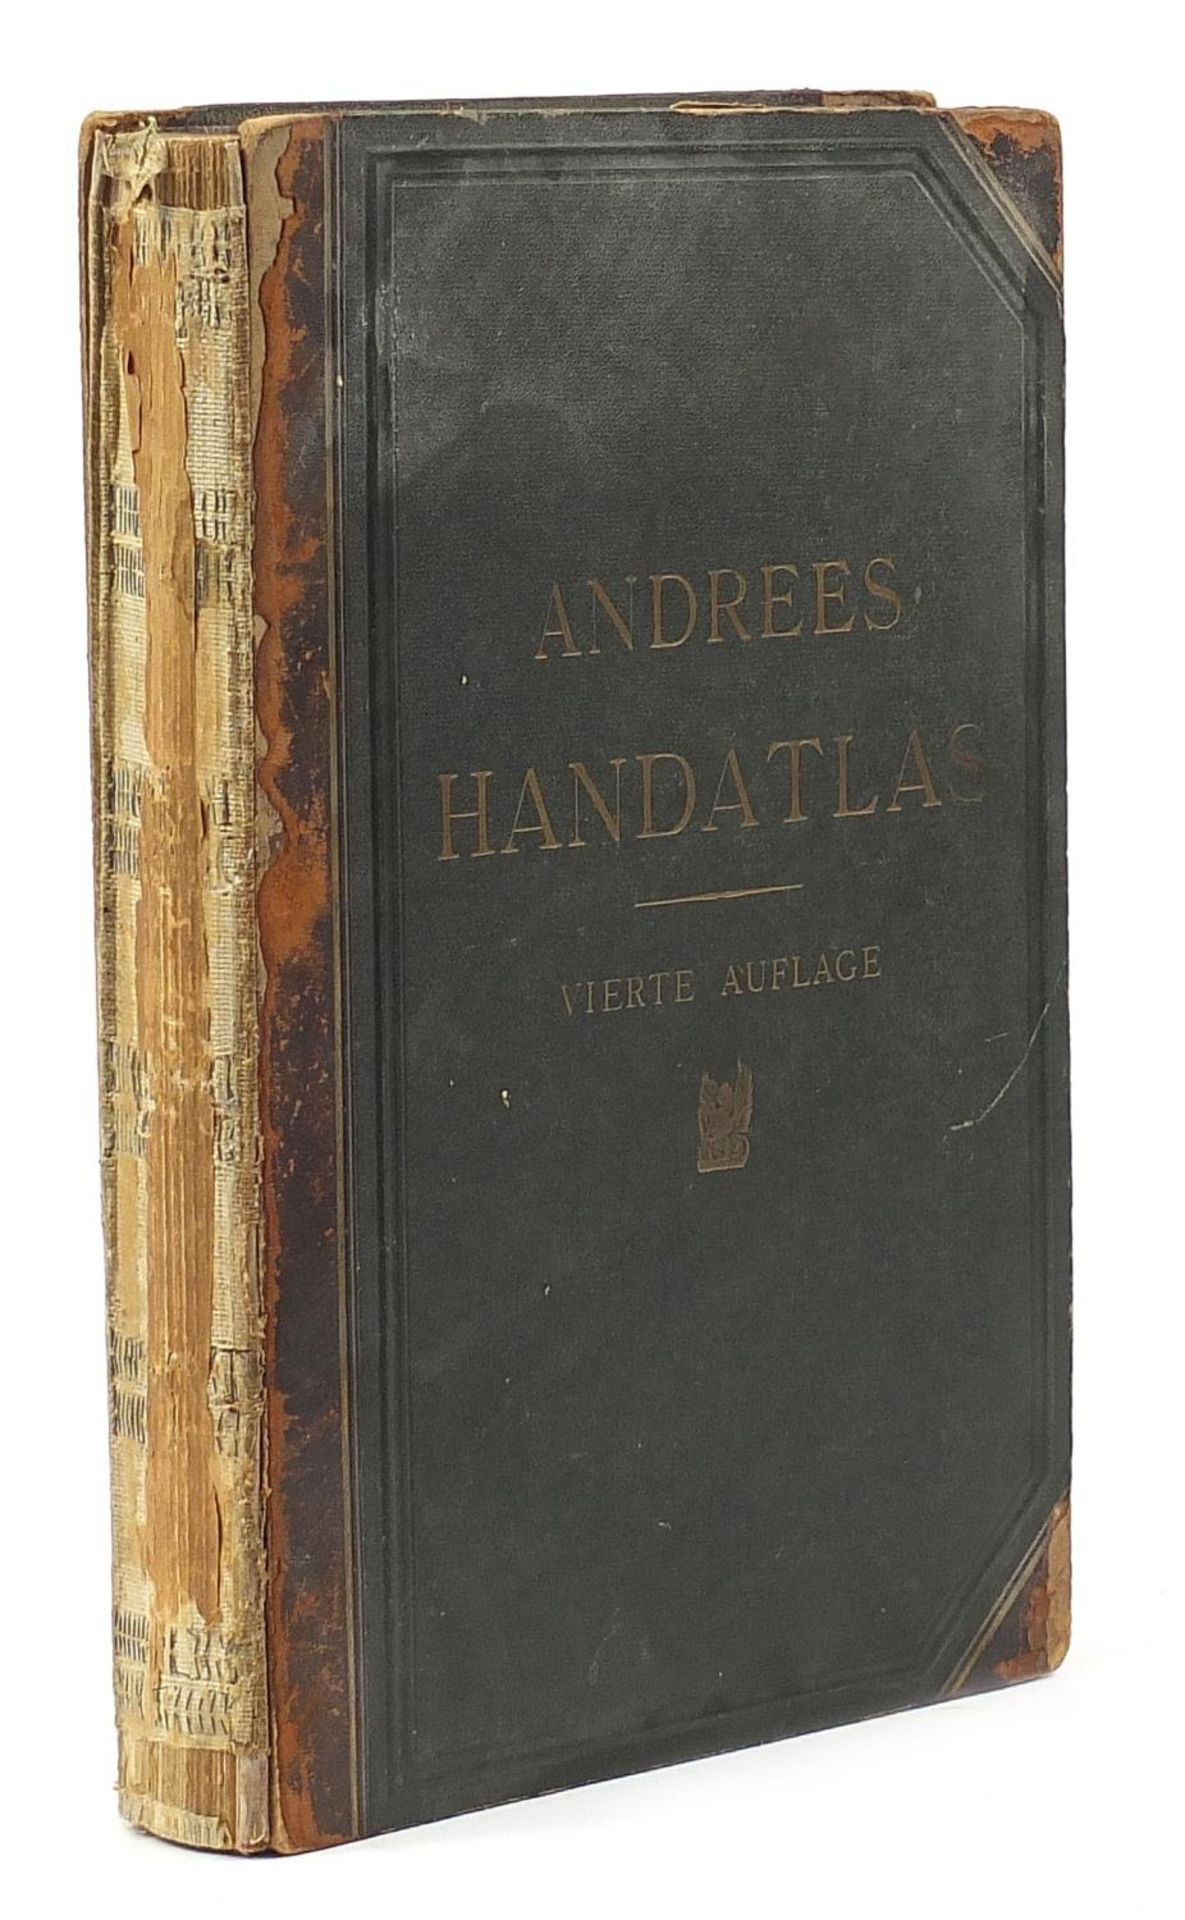 Andrees Handatlas hardback book by Scobell 1900